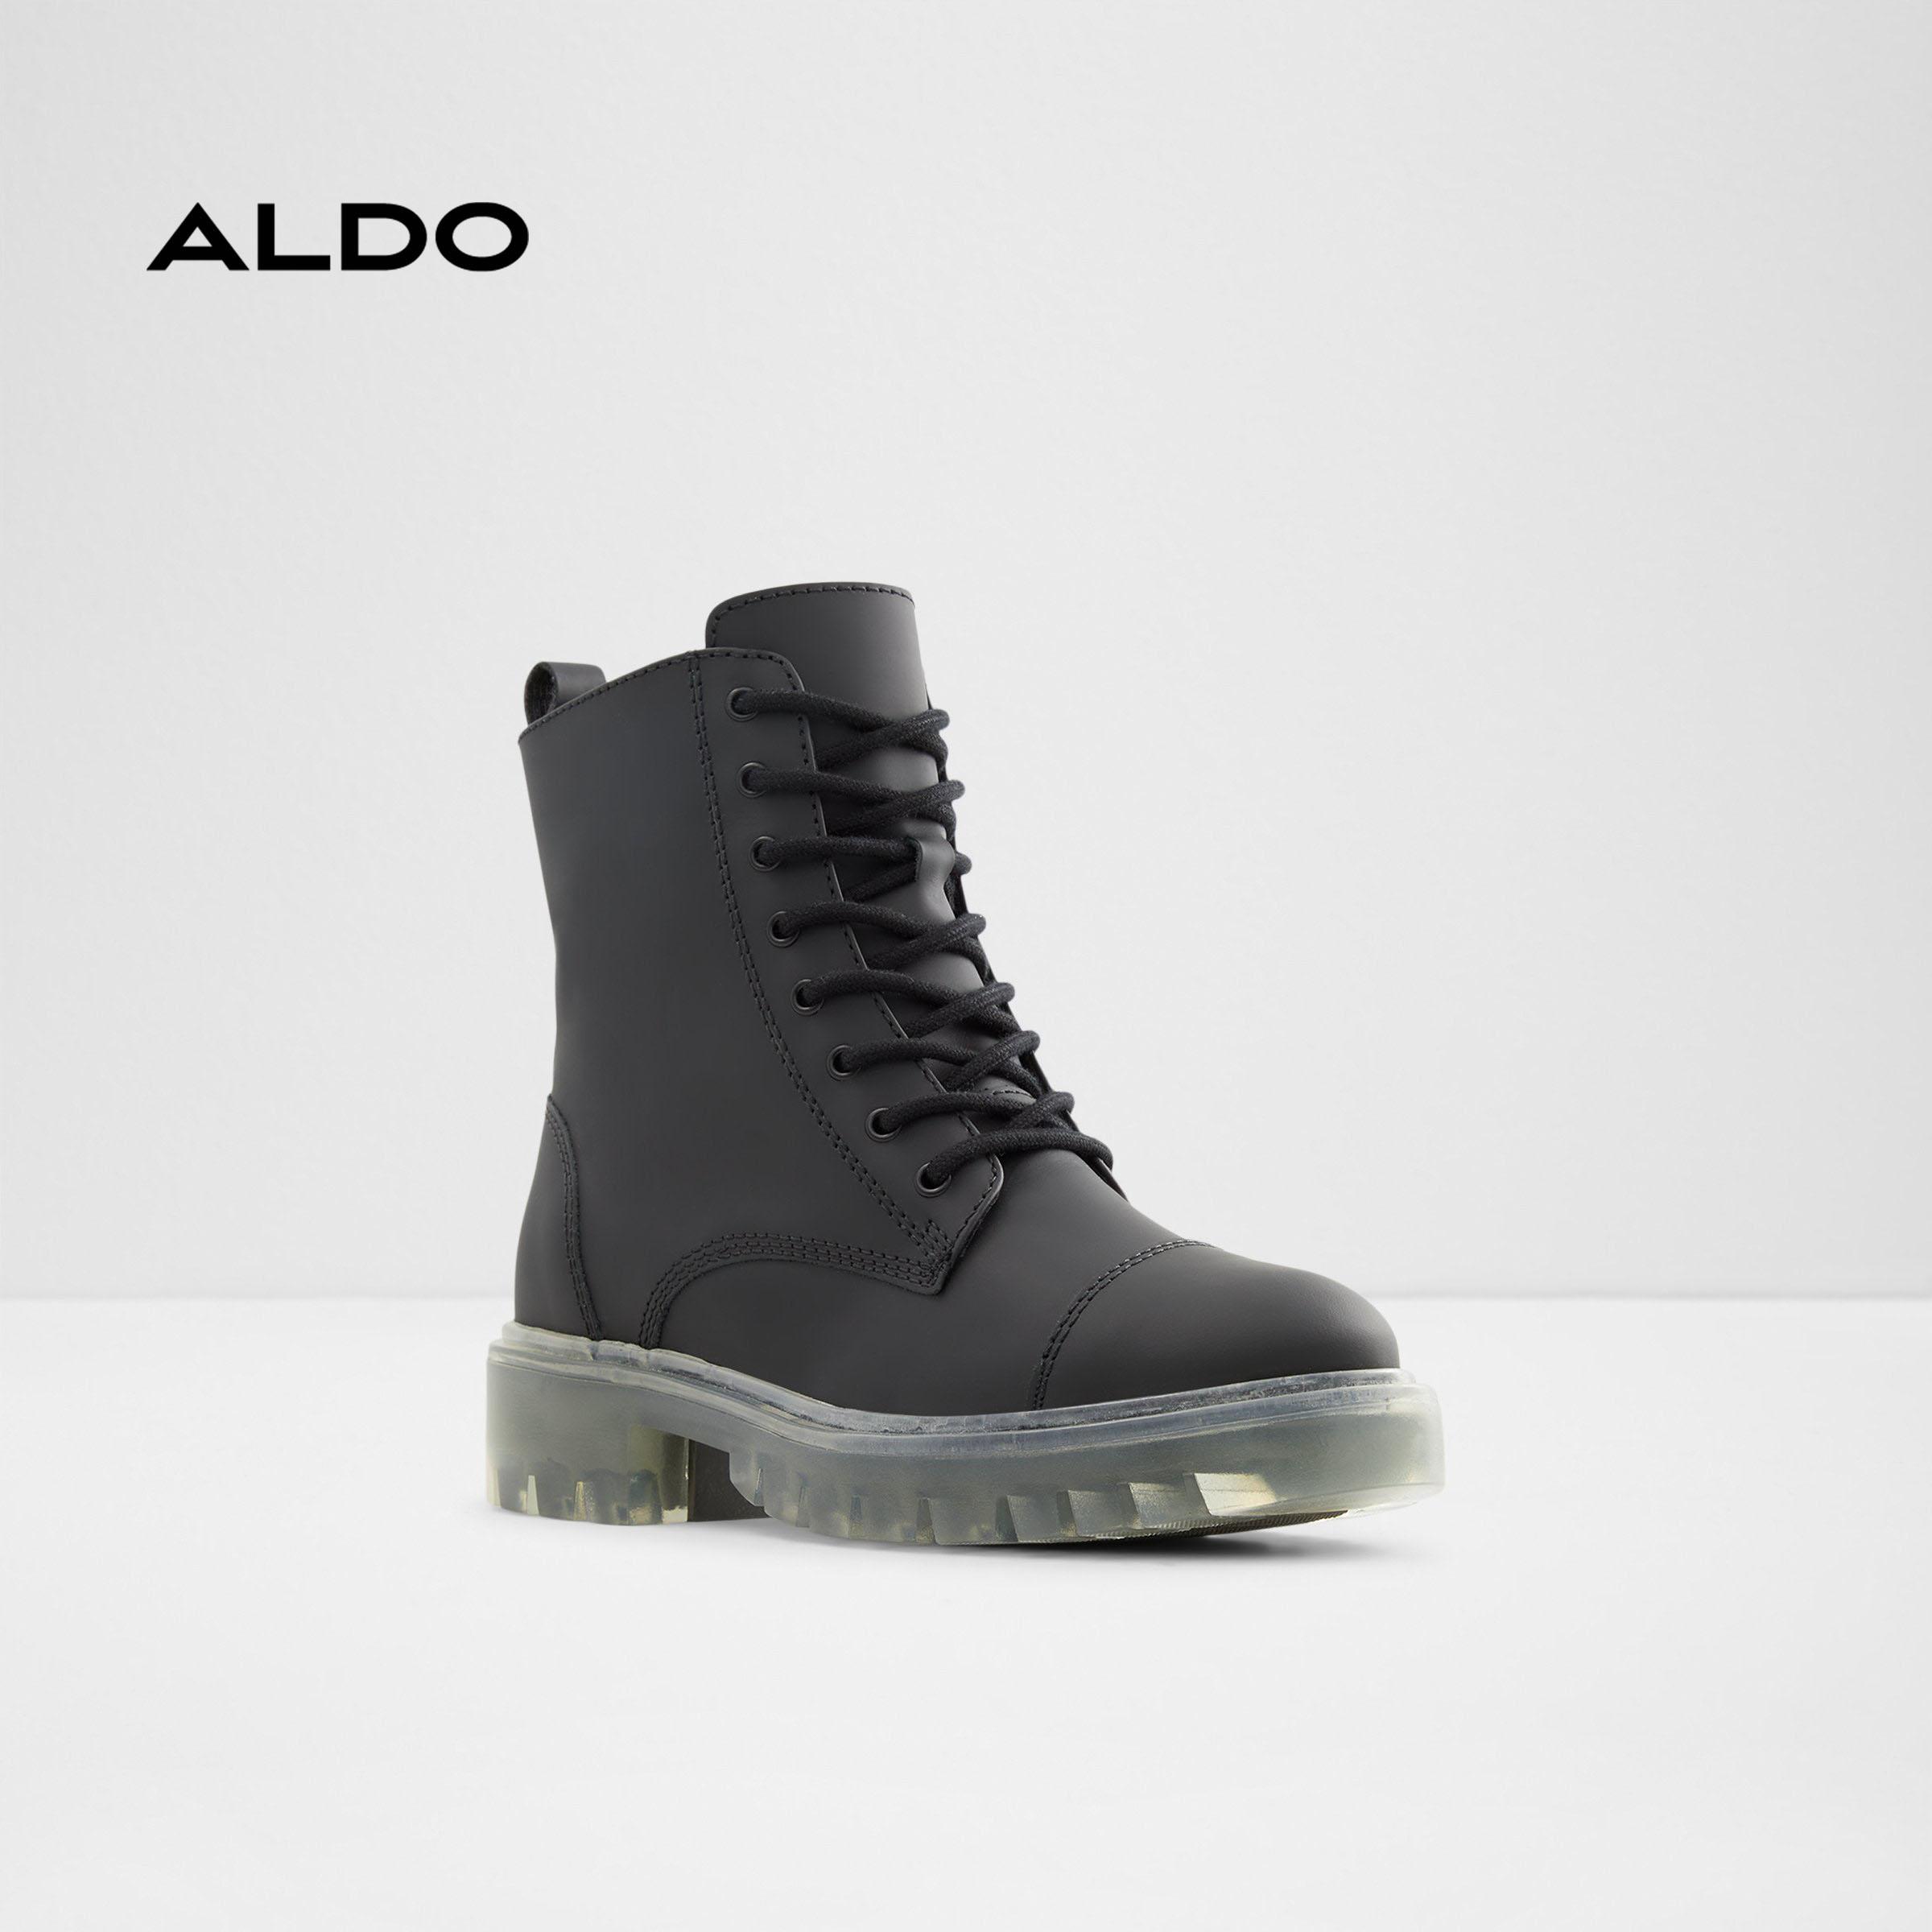 Boot thời trang nữ Aldo REILLY